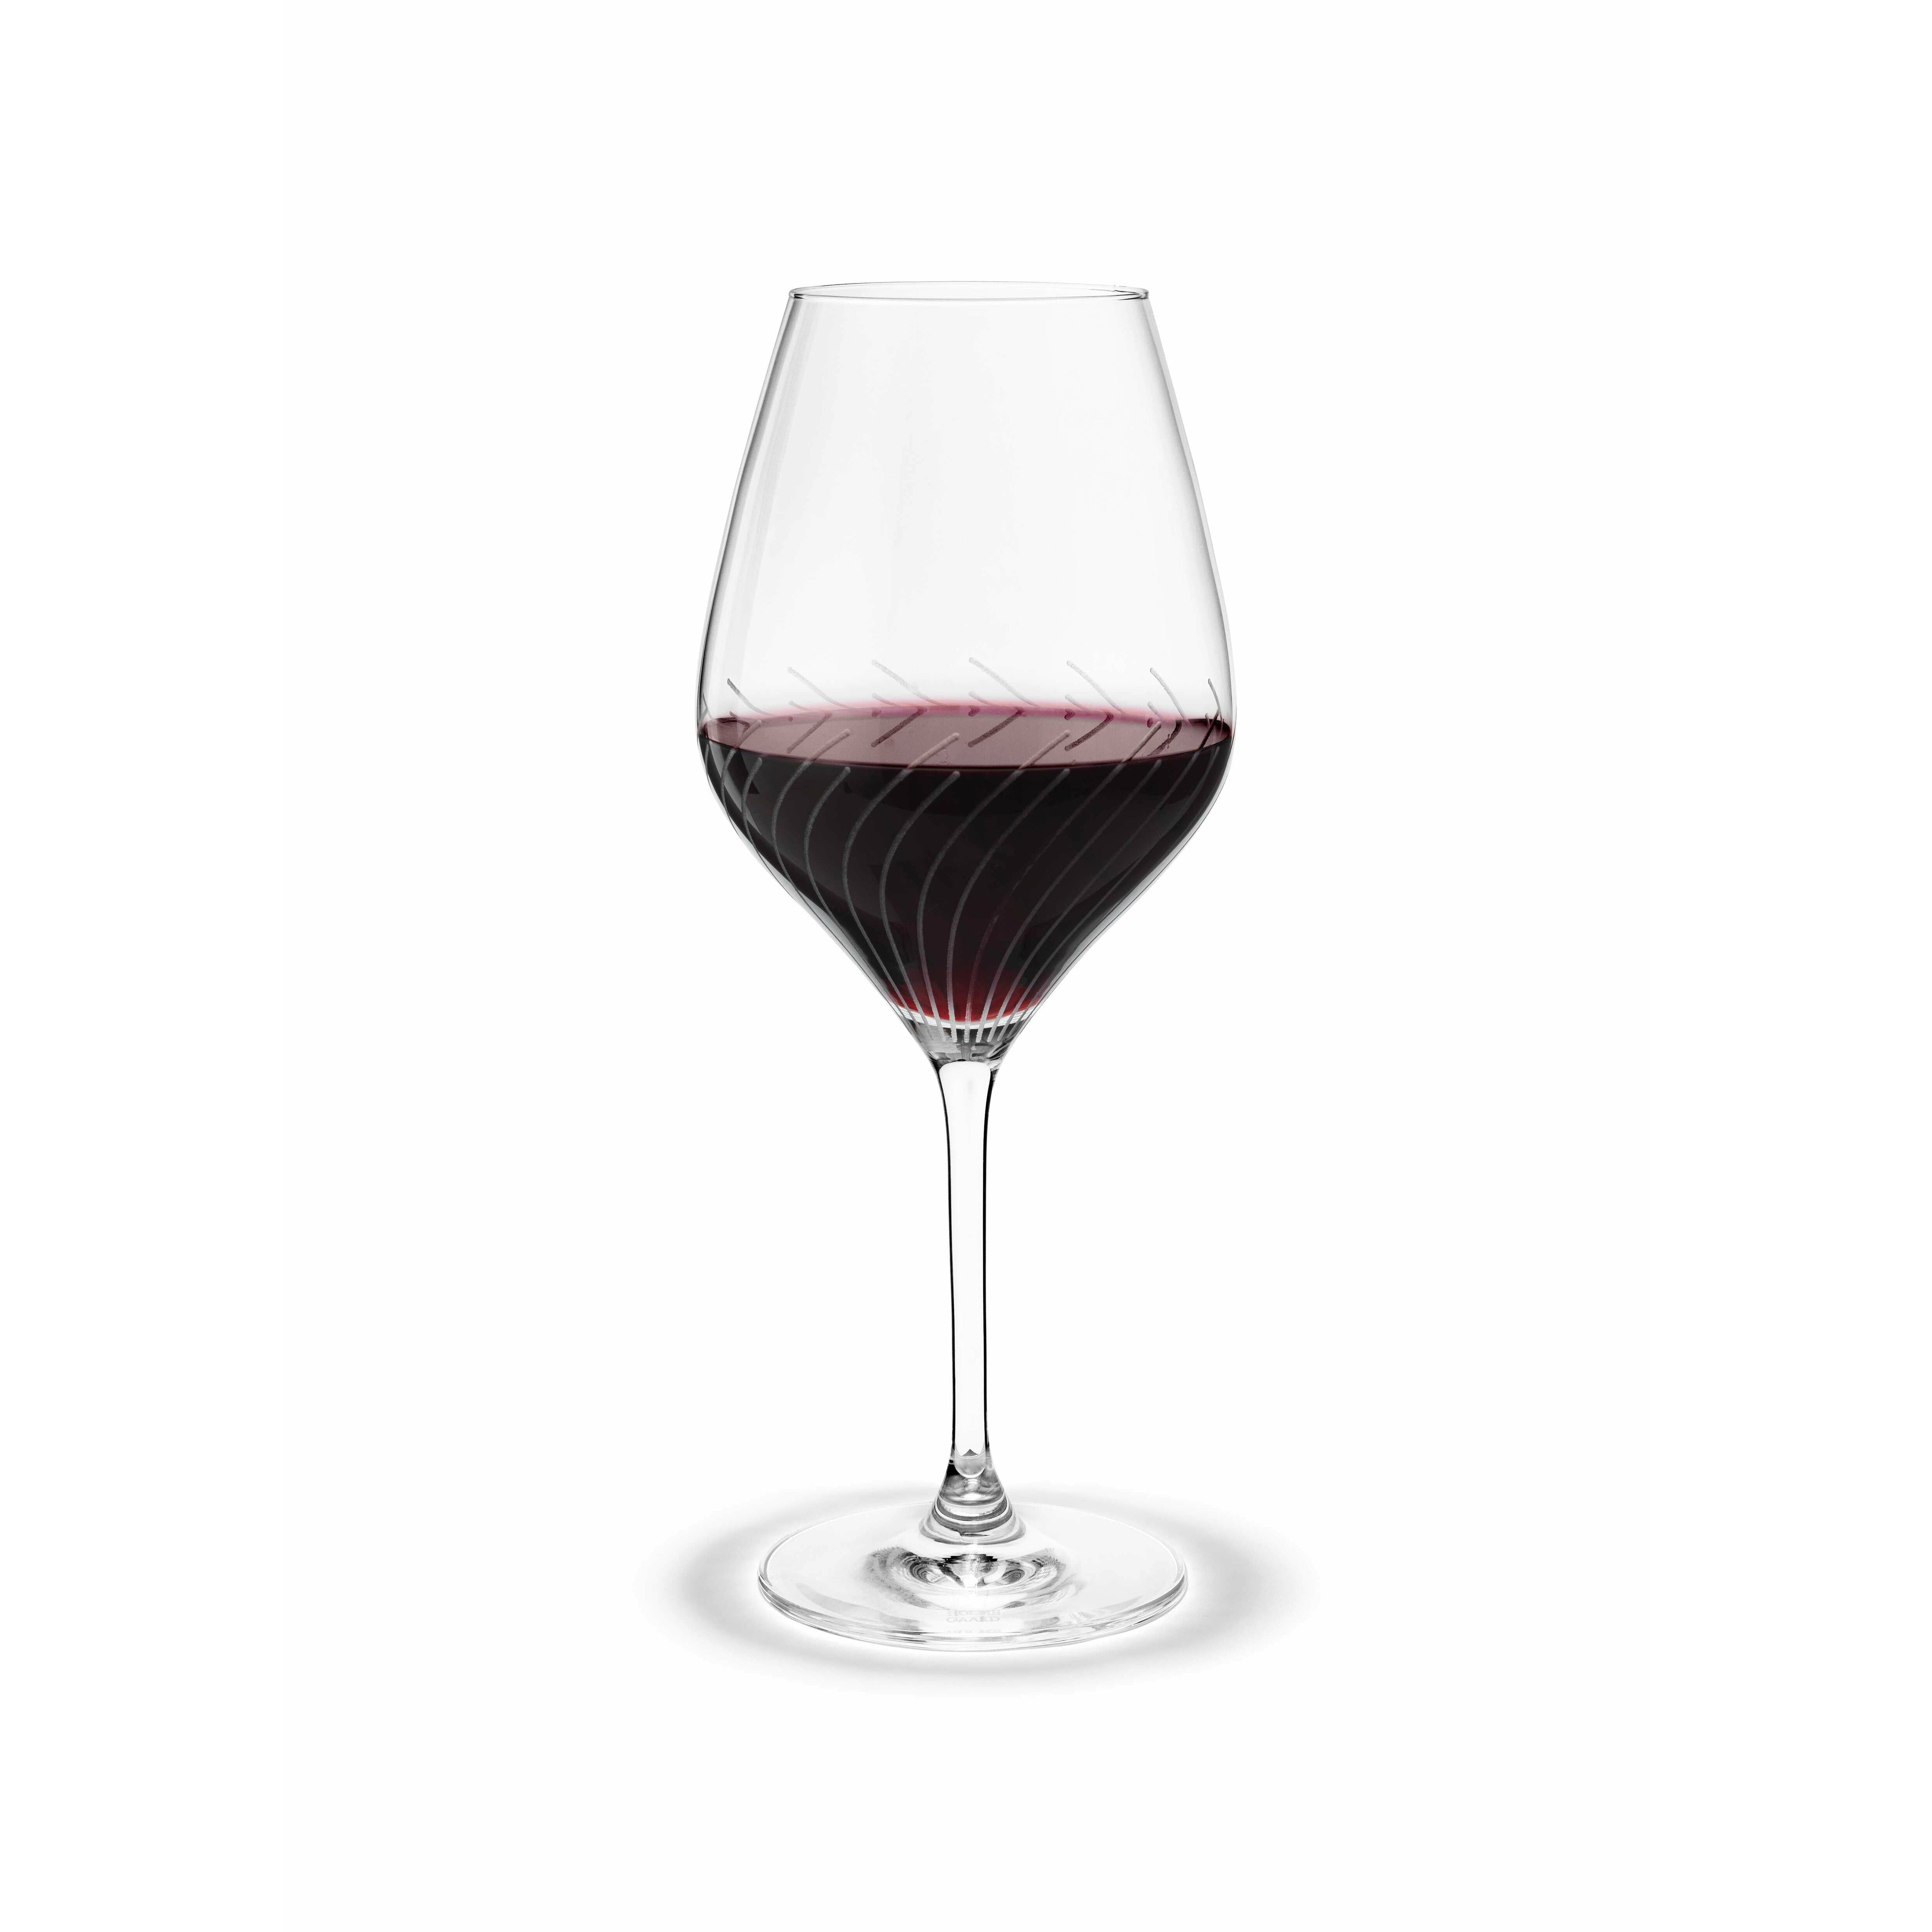 Holmegaard Lignes de cabernet Verre à vin rouge, 2 pcs.